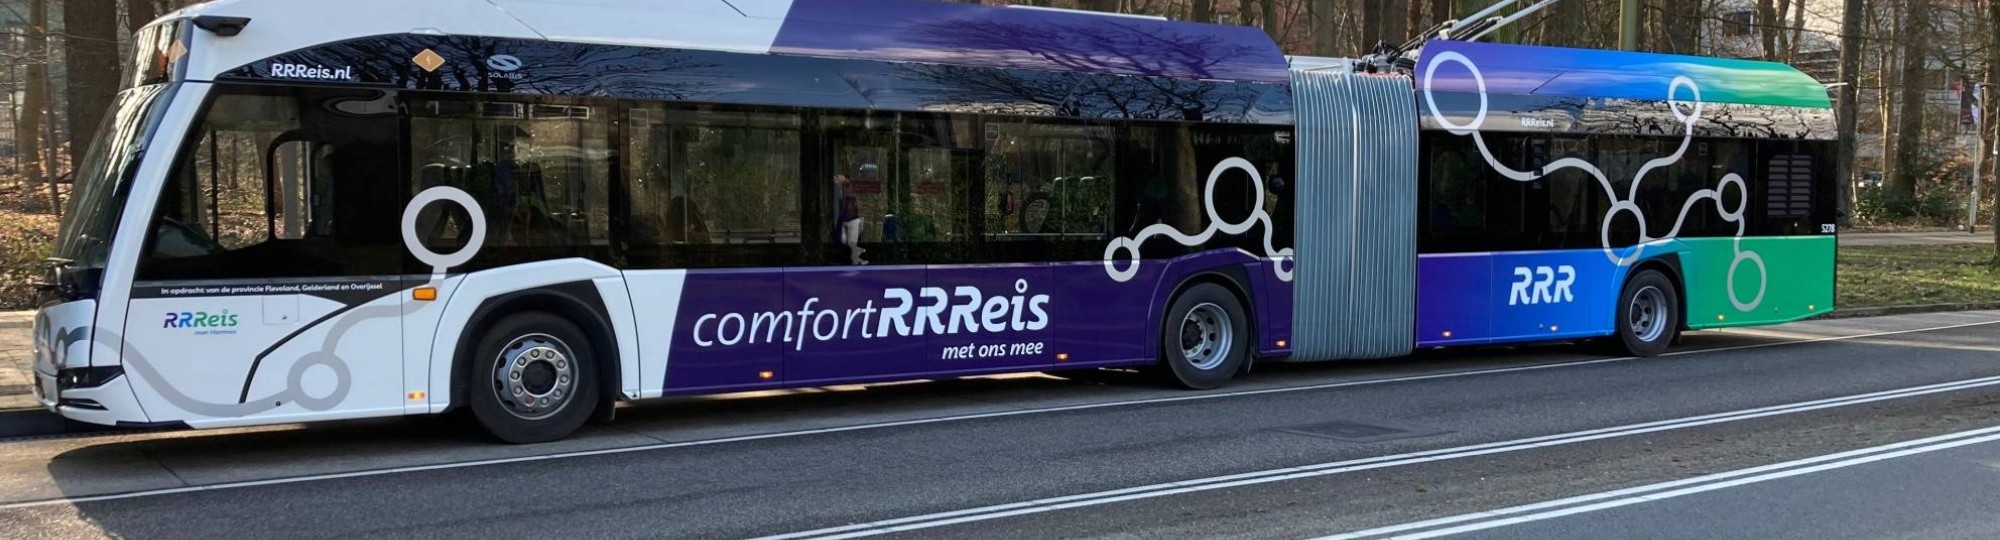 Nieuwe trolleybus Arnhem, voor de deur van HAN r31